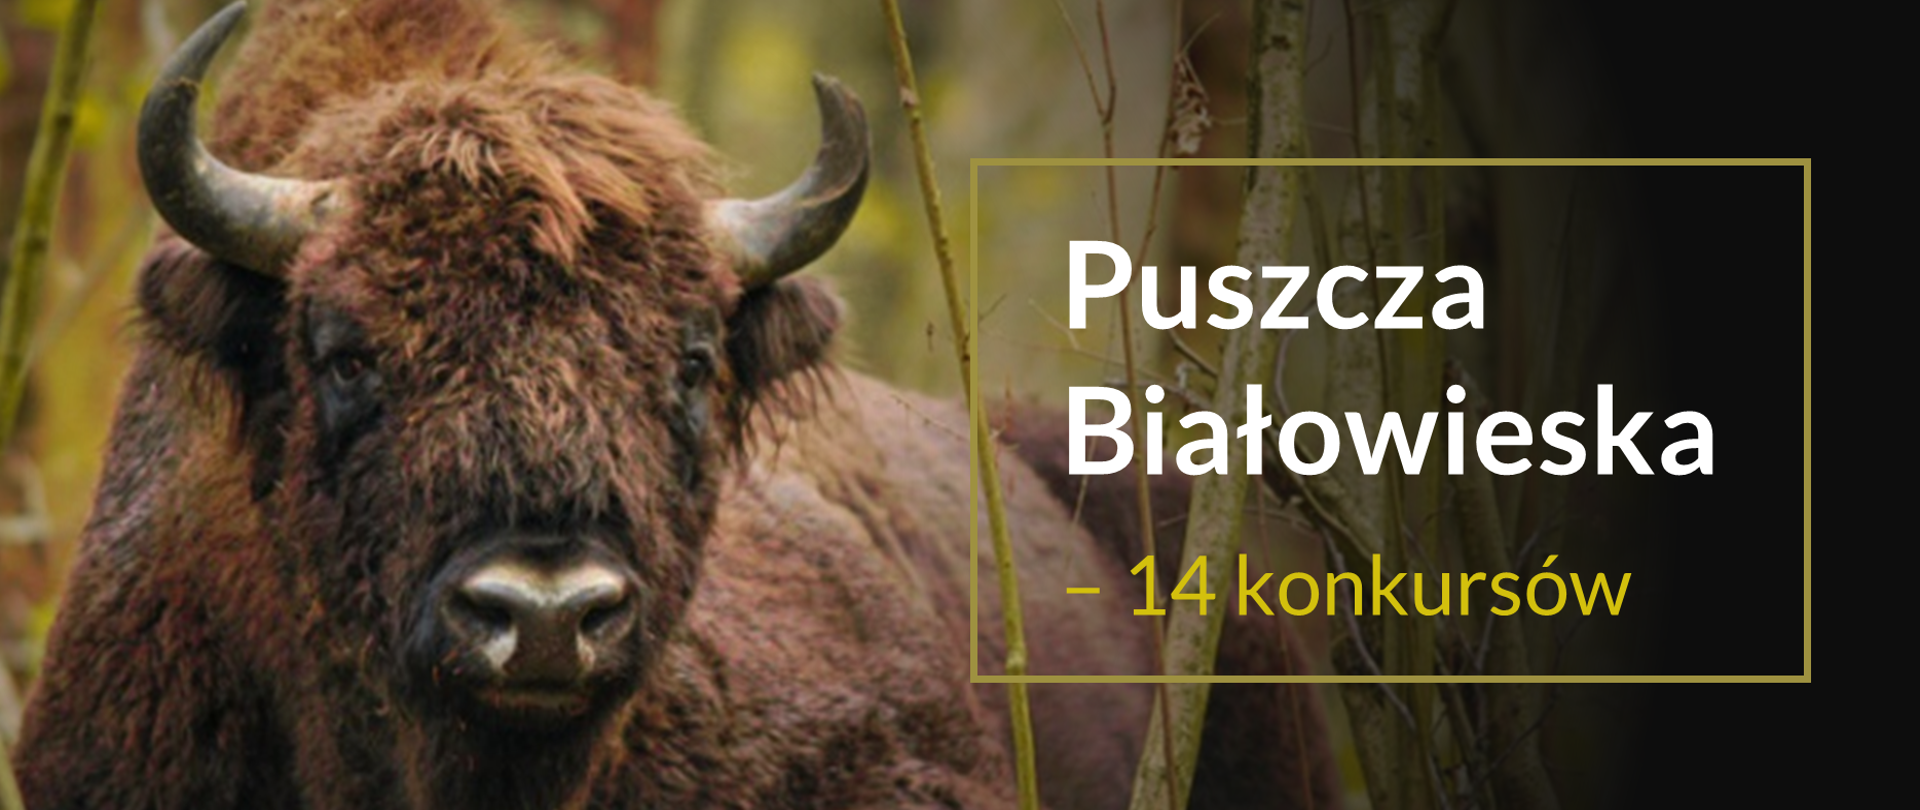 Grafika z żubrem i tekstem: "Puszcza Białowieska – 14 konkursów"